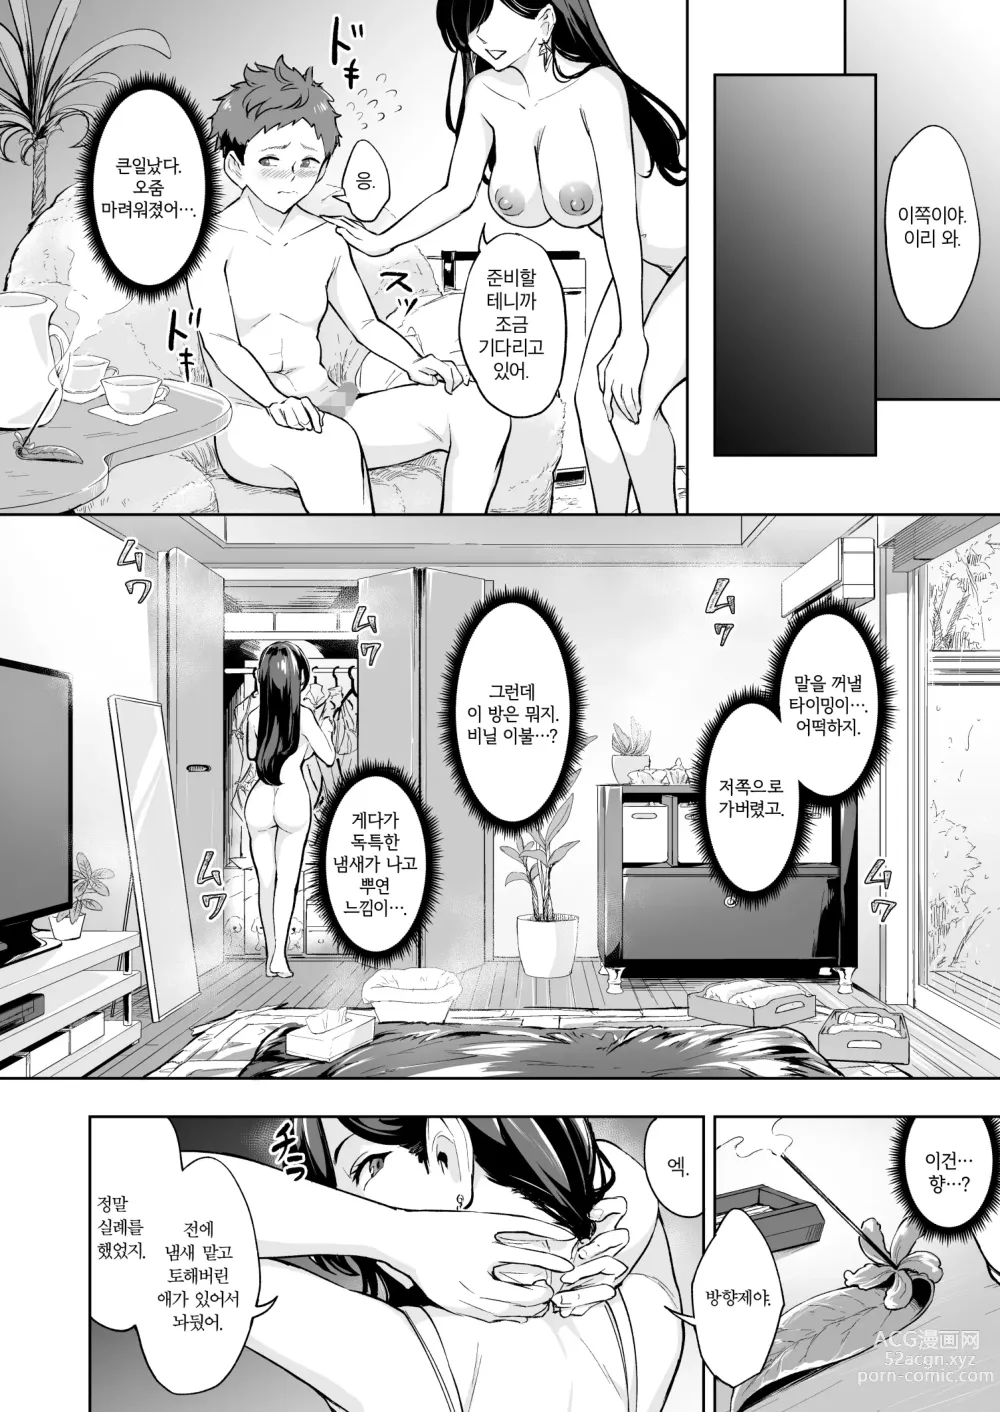 Page 7 of doujinshi 나타난 치녀는 연하킬러인 스카토로 변태였습니다 3